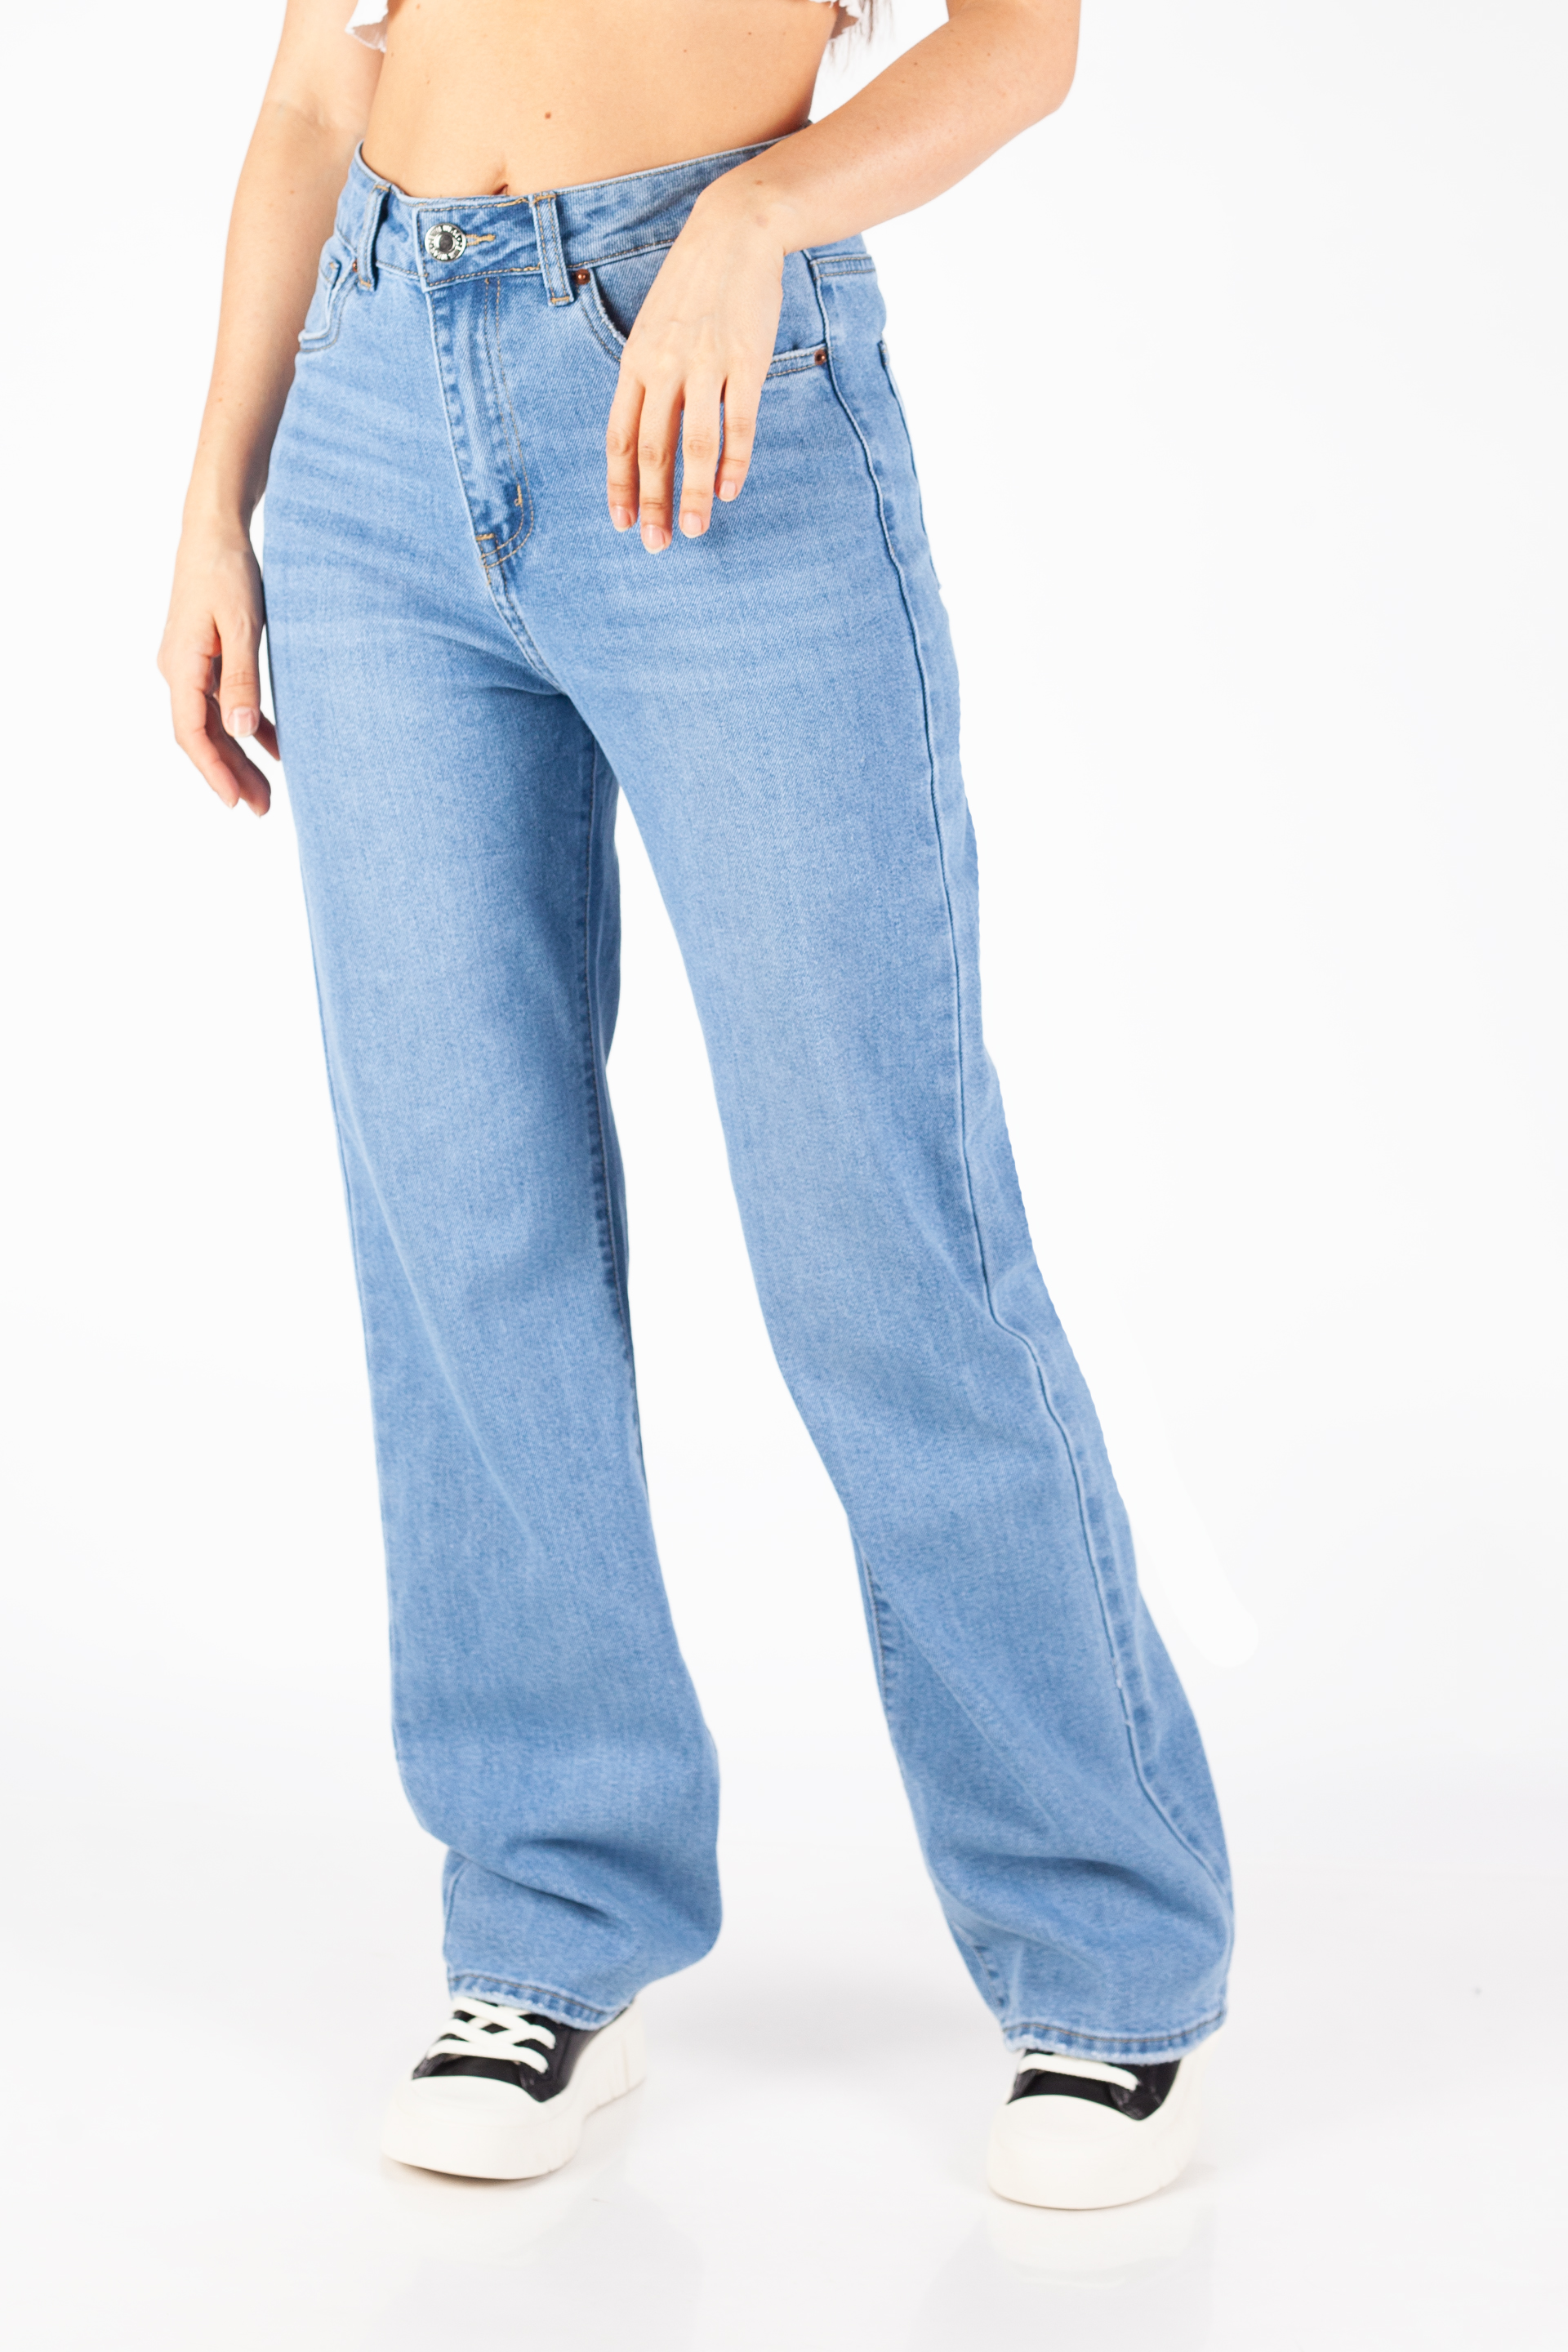 Jeans VS MISS VS8198